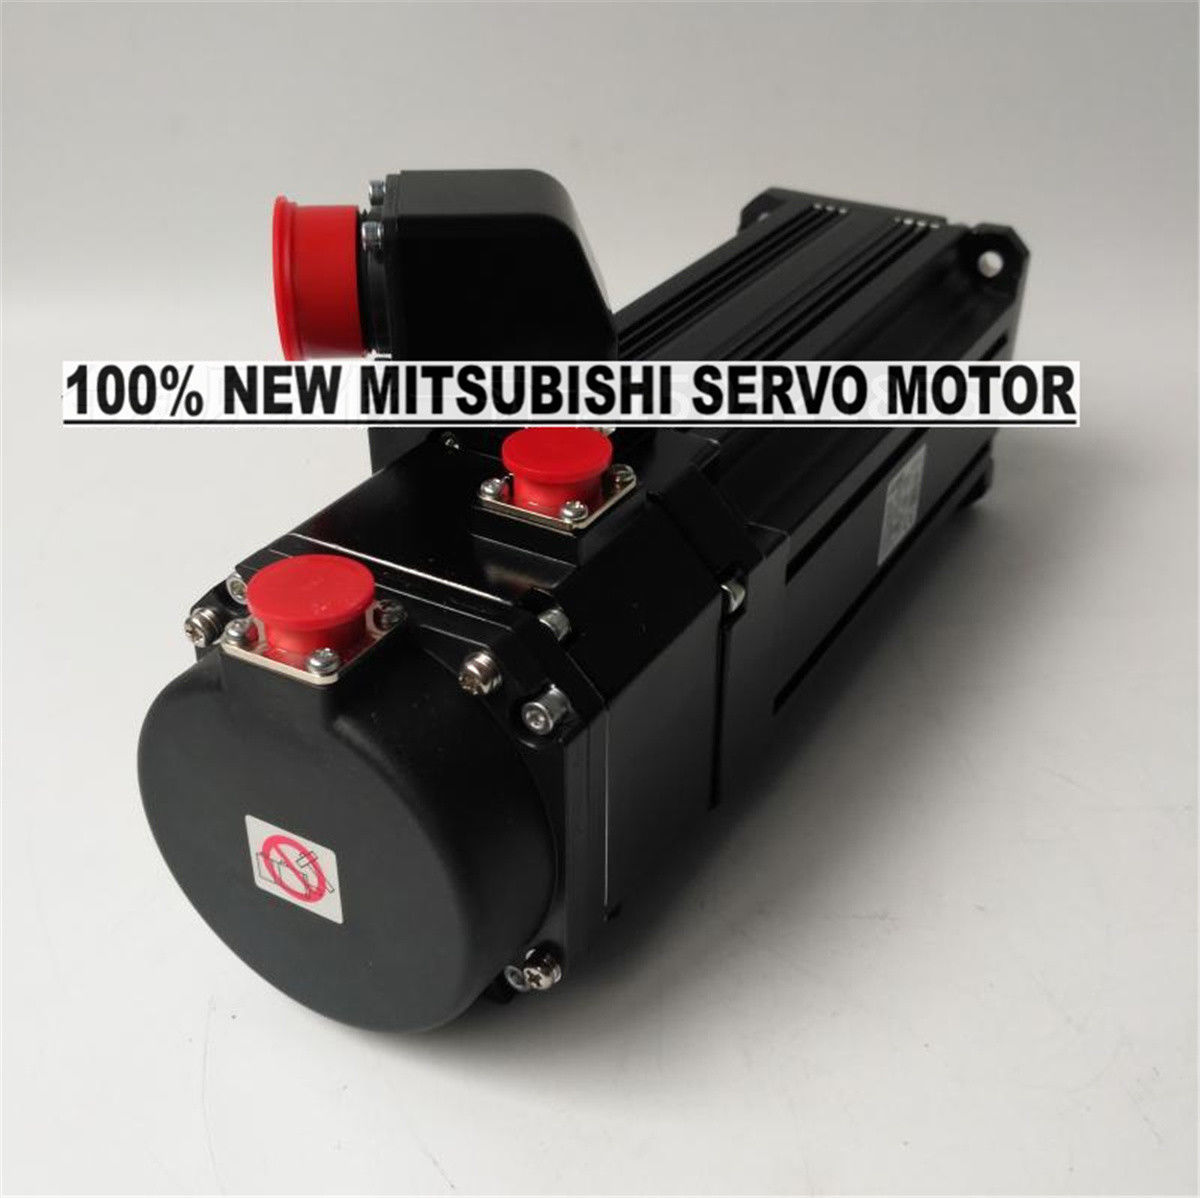 NEW Mitsubishi Servo Motor HG-JR203 in box HGJR203 - Click Image to Close